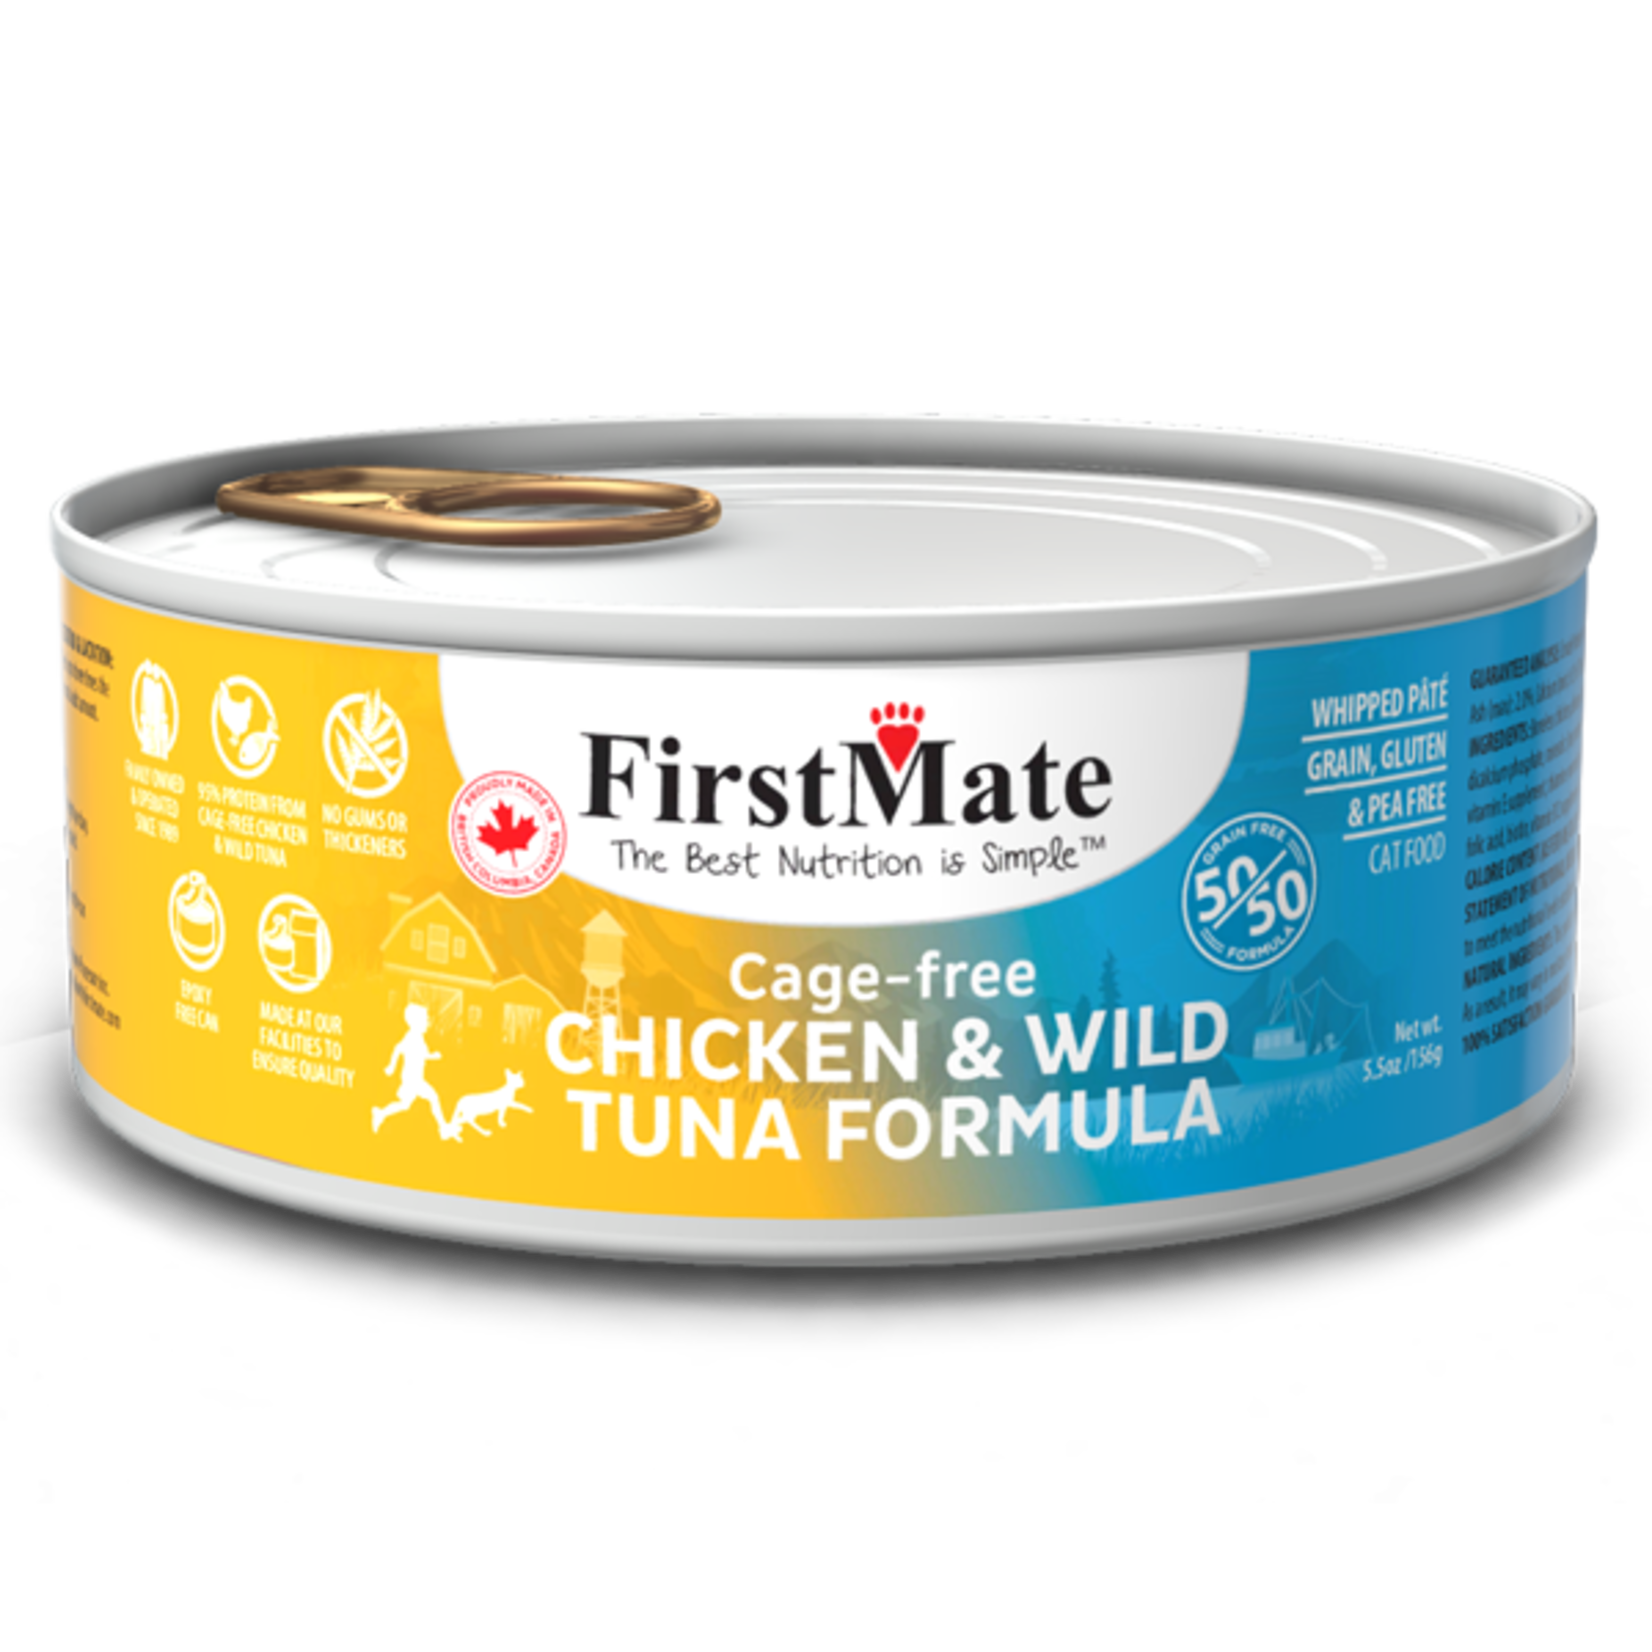 First Mate FirstMate Cat GF 50/50 Cage Free Chicken/Wild Tuna 5.5 oz